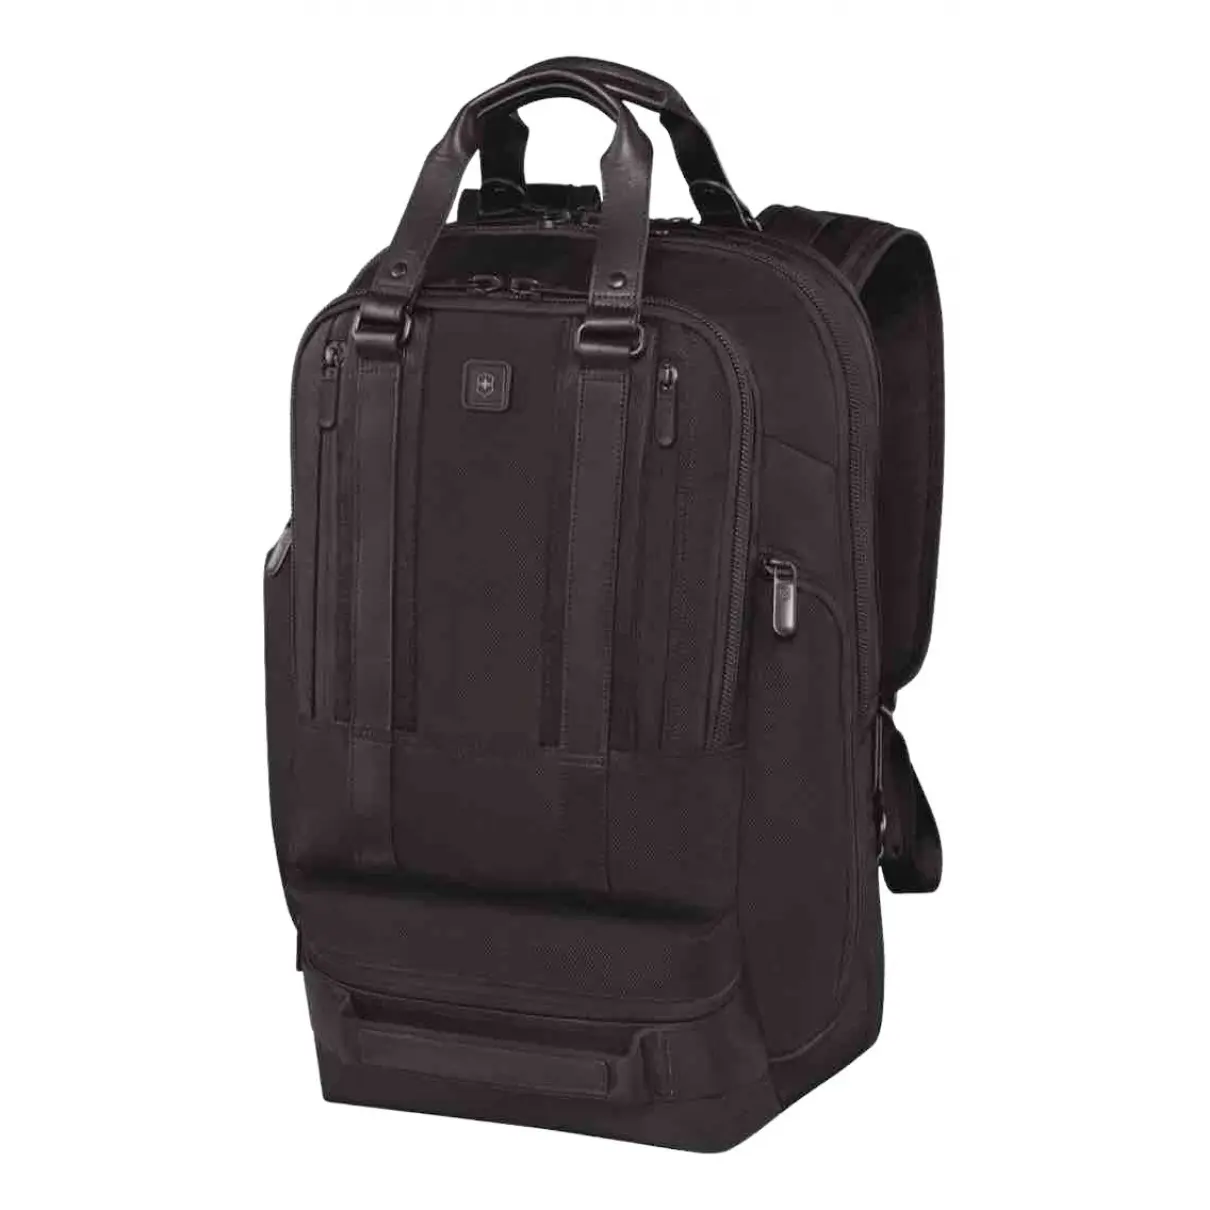 Buy Victorinox Bag online